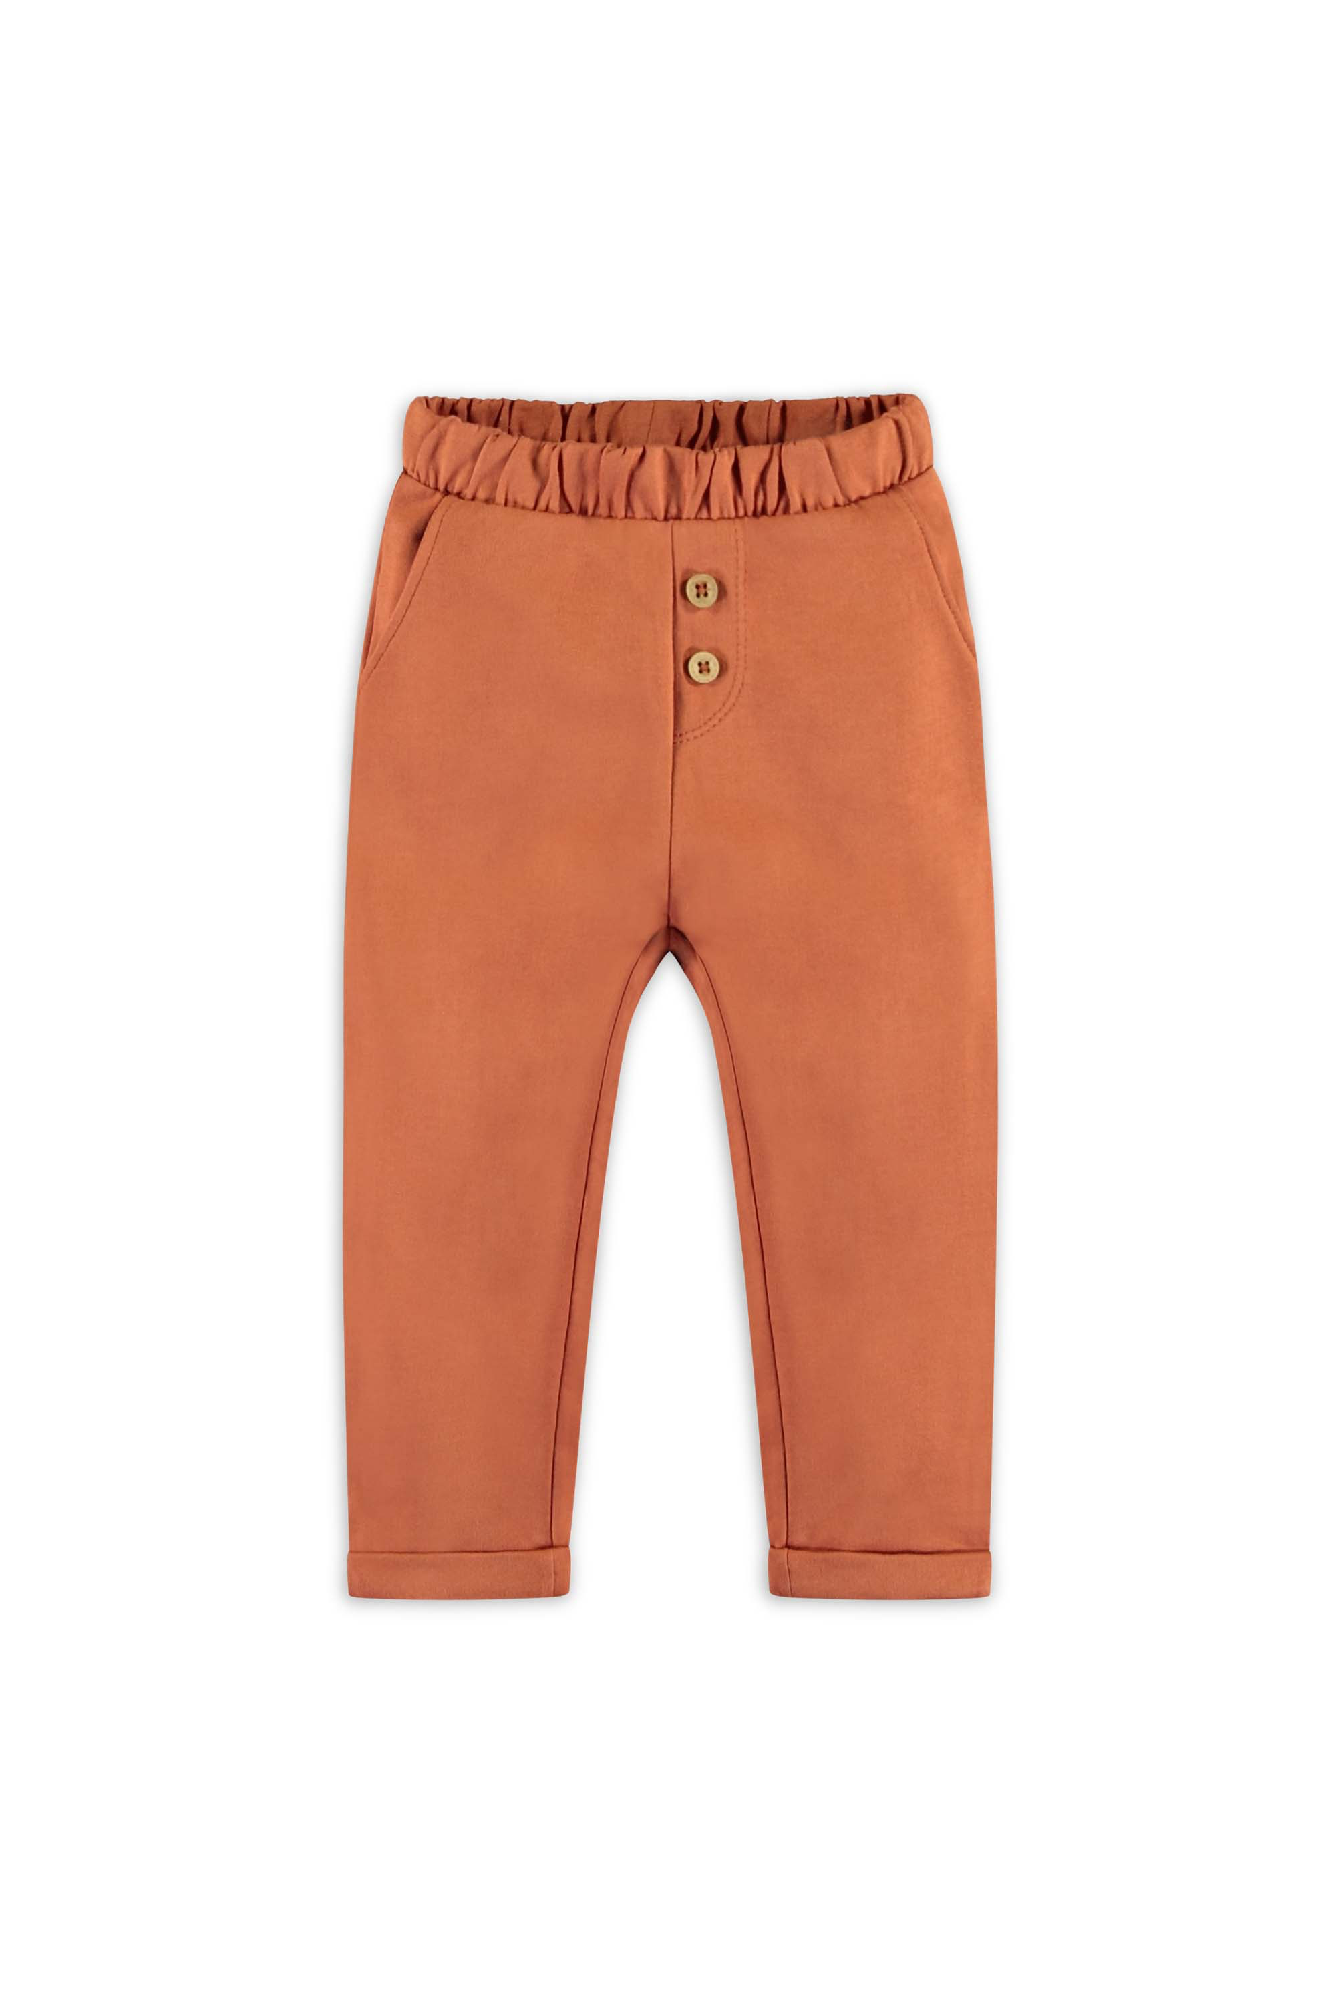 Jongens Sweat pants with wooden buttons van The New Chapter in de kleur Terraotta in maat 86.